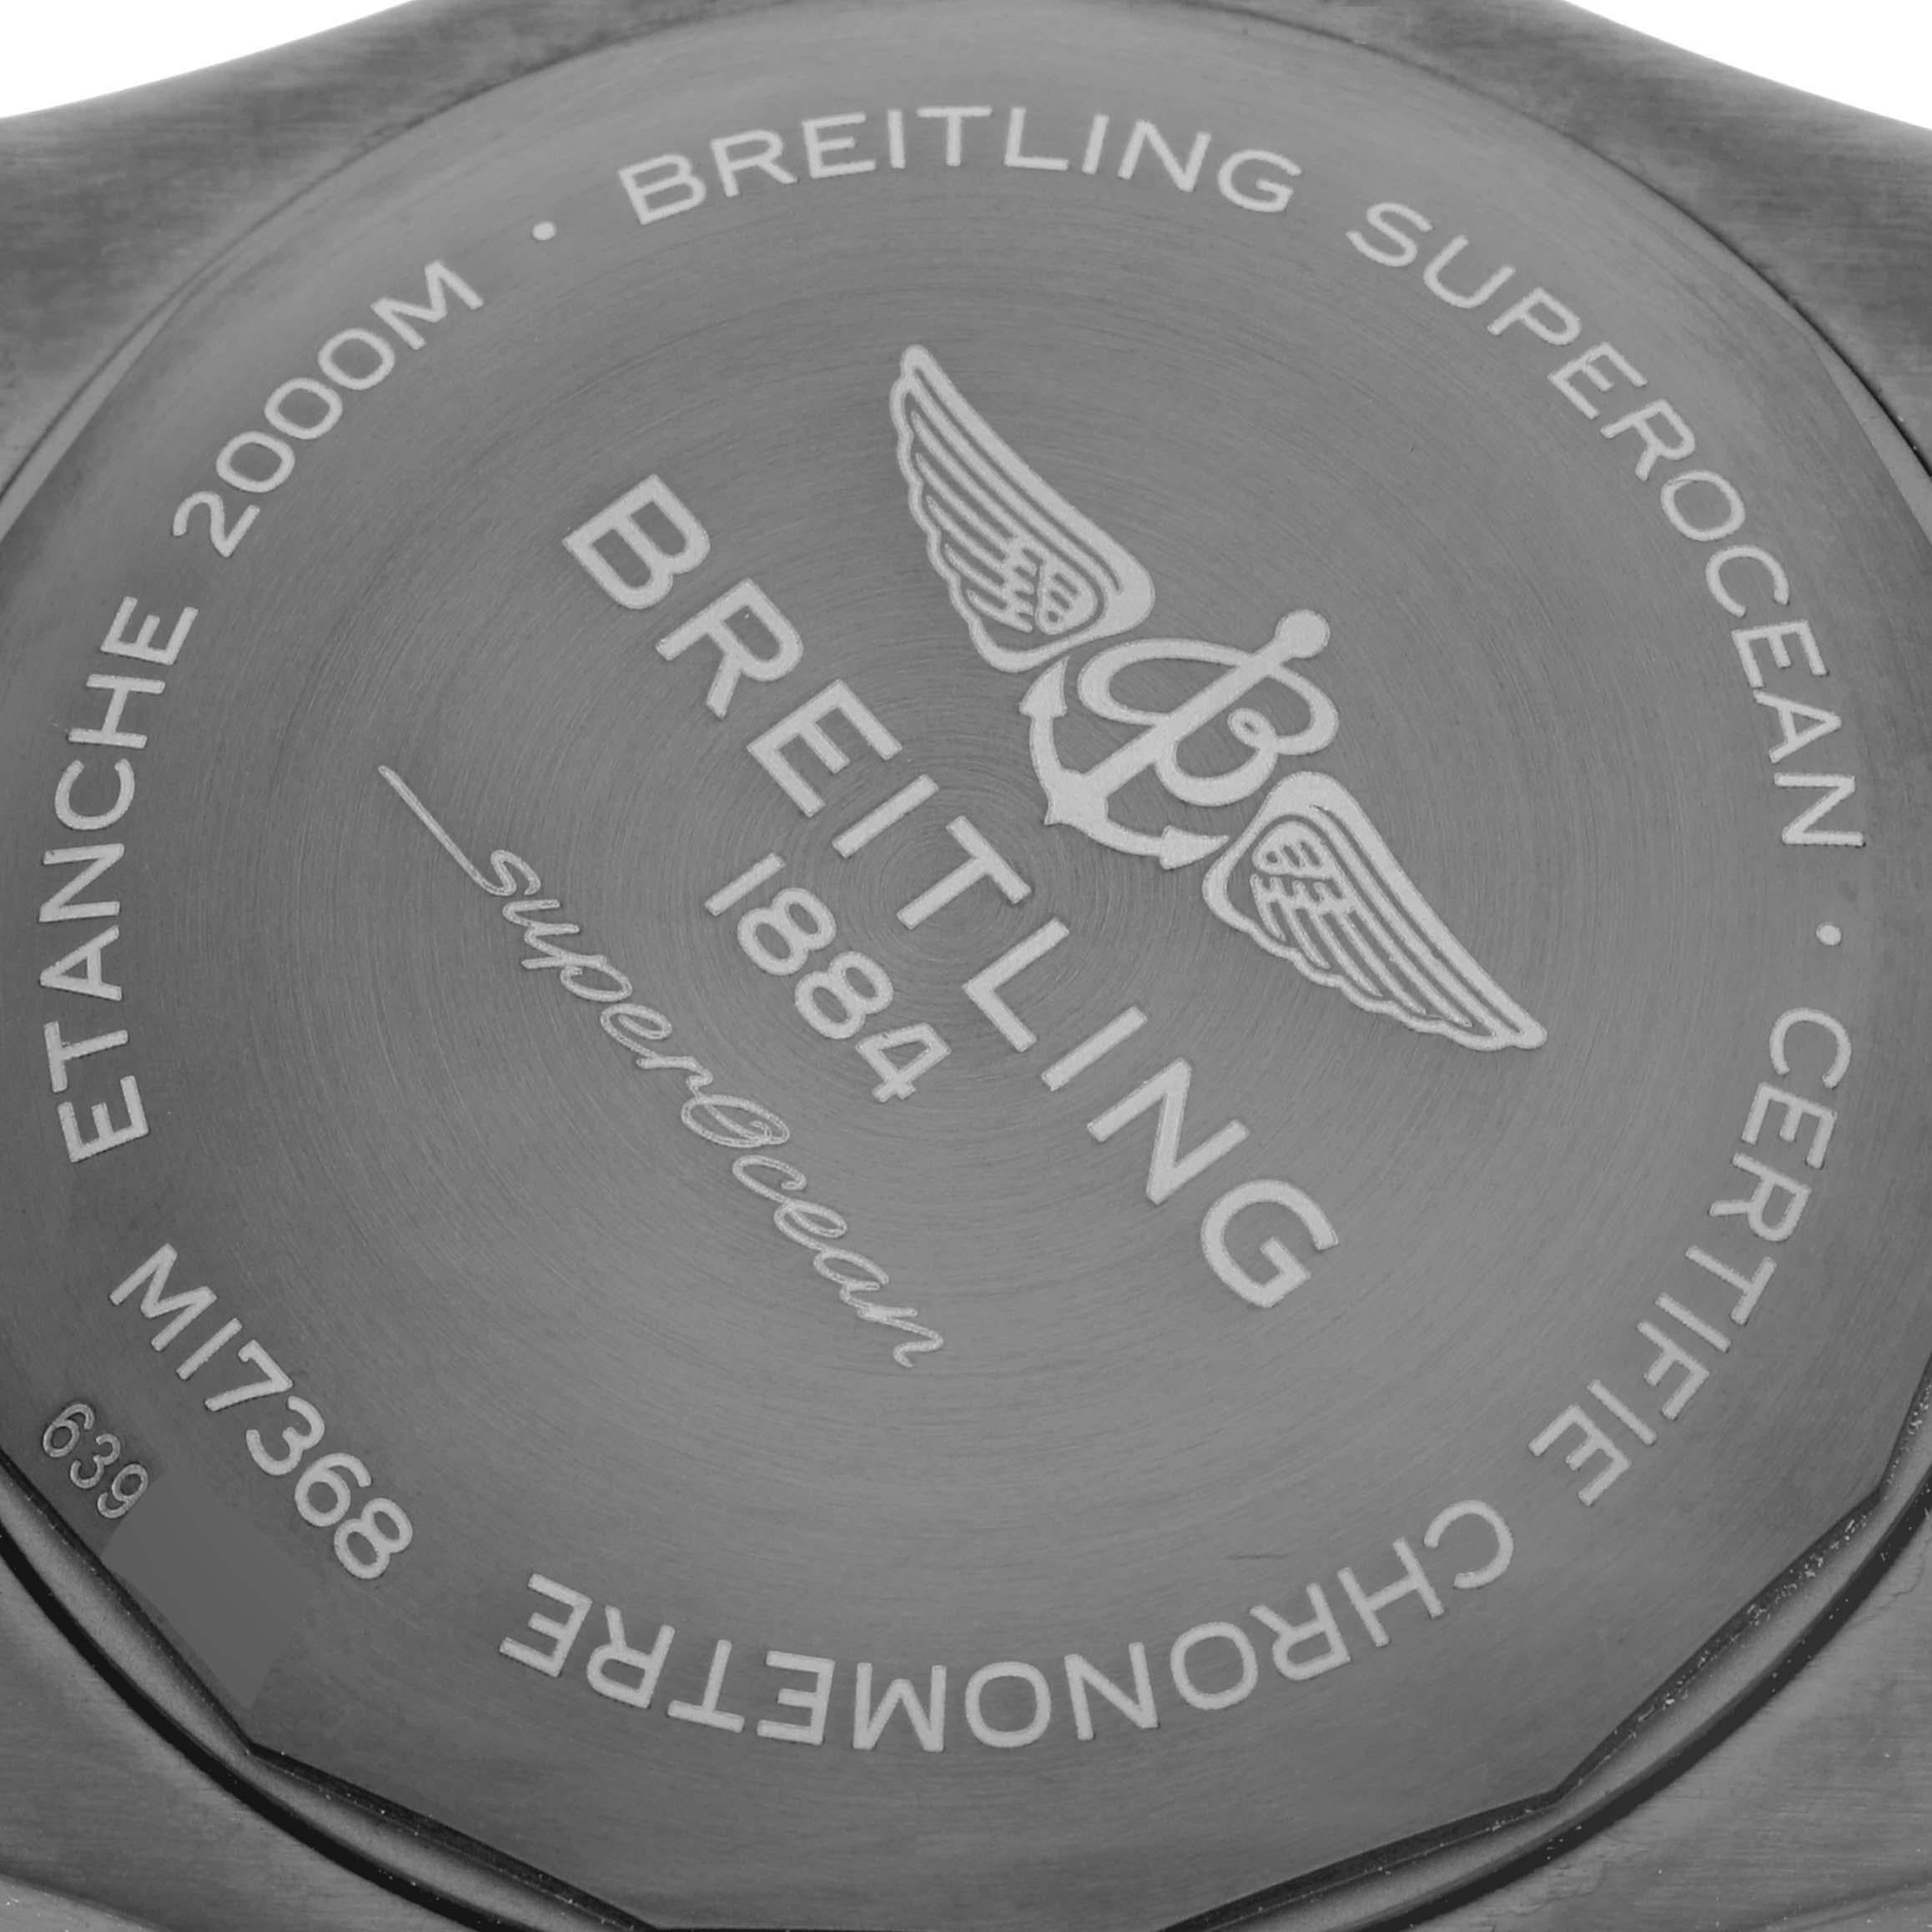 Breitling Superocean 46 Black Dial DLC Steel Mens Watch M17368 Unworn For Sale 2